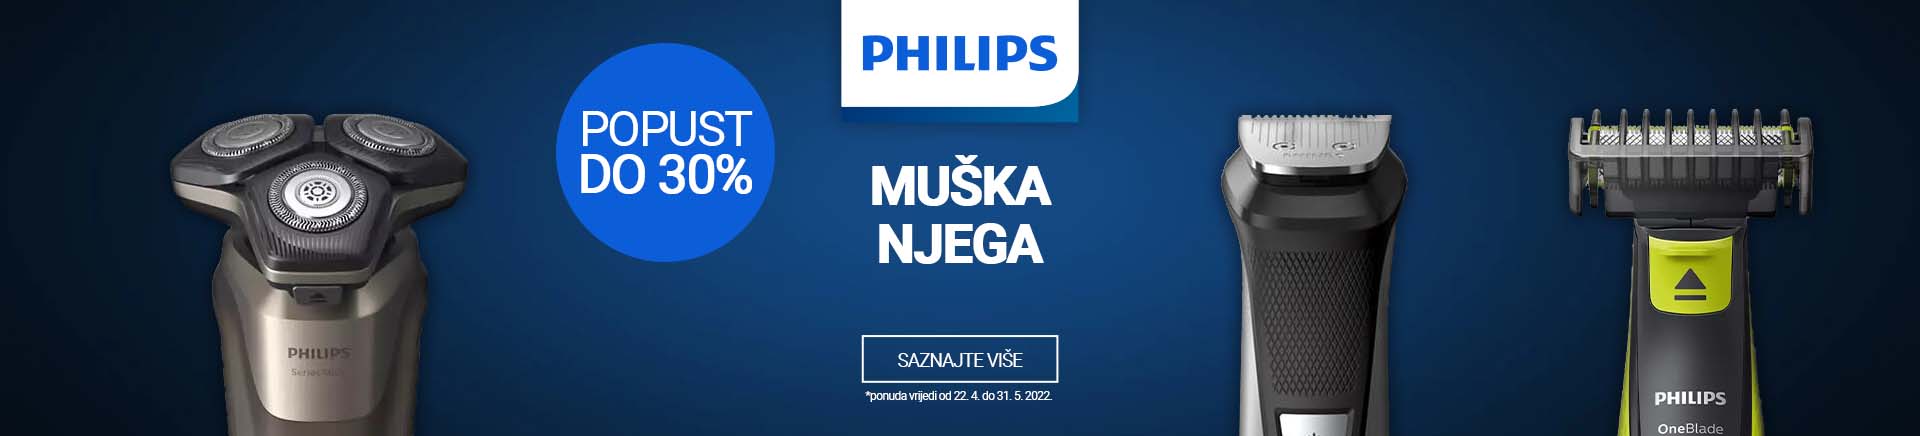 Philips aparati za šišanje i brijanje do 30% popusta